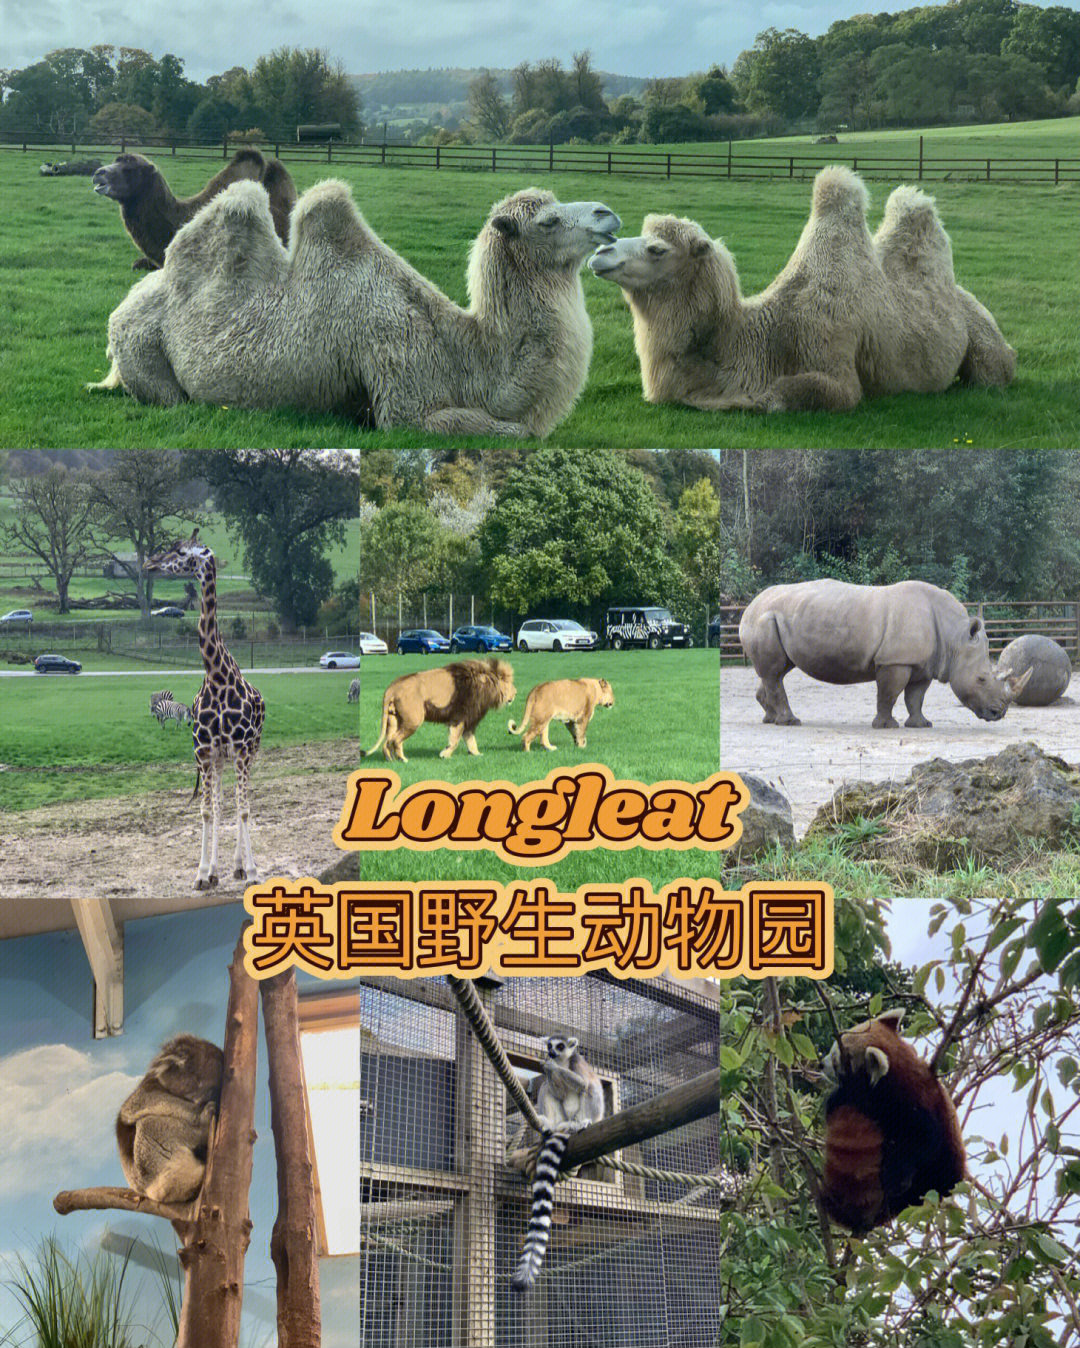 英国longleat也可以看红熊猫啦 longleat是英国排名第一的动物园了